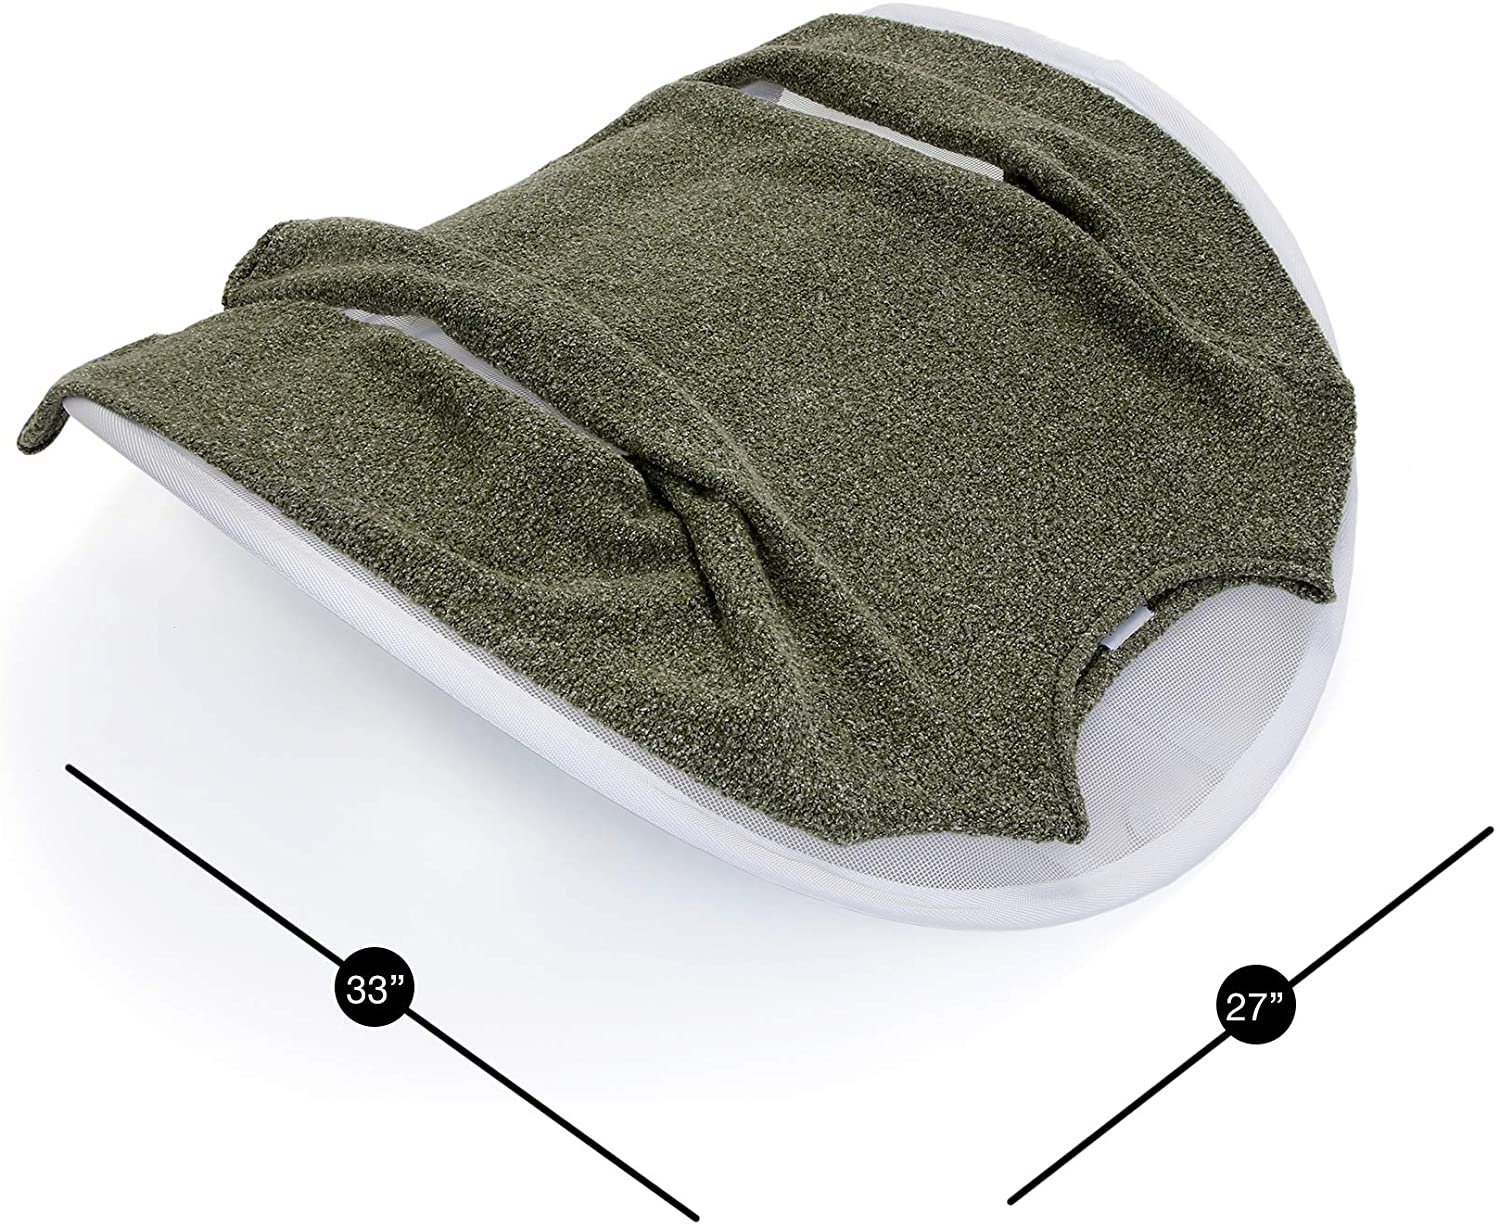 Pop-Up Adjustable Sweater Dryer with Adjustable Straps - Smart Design® 3